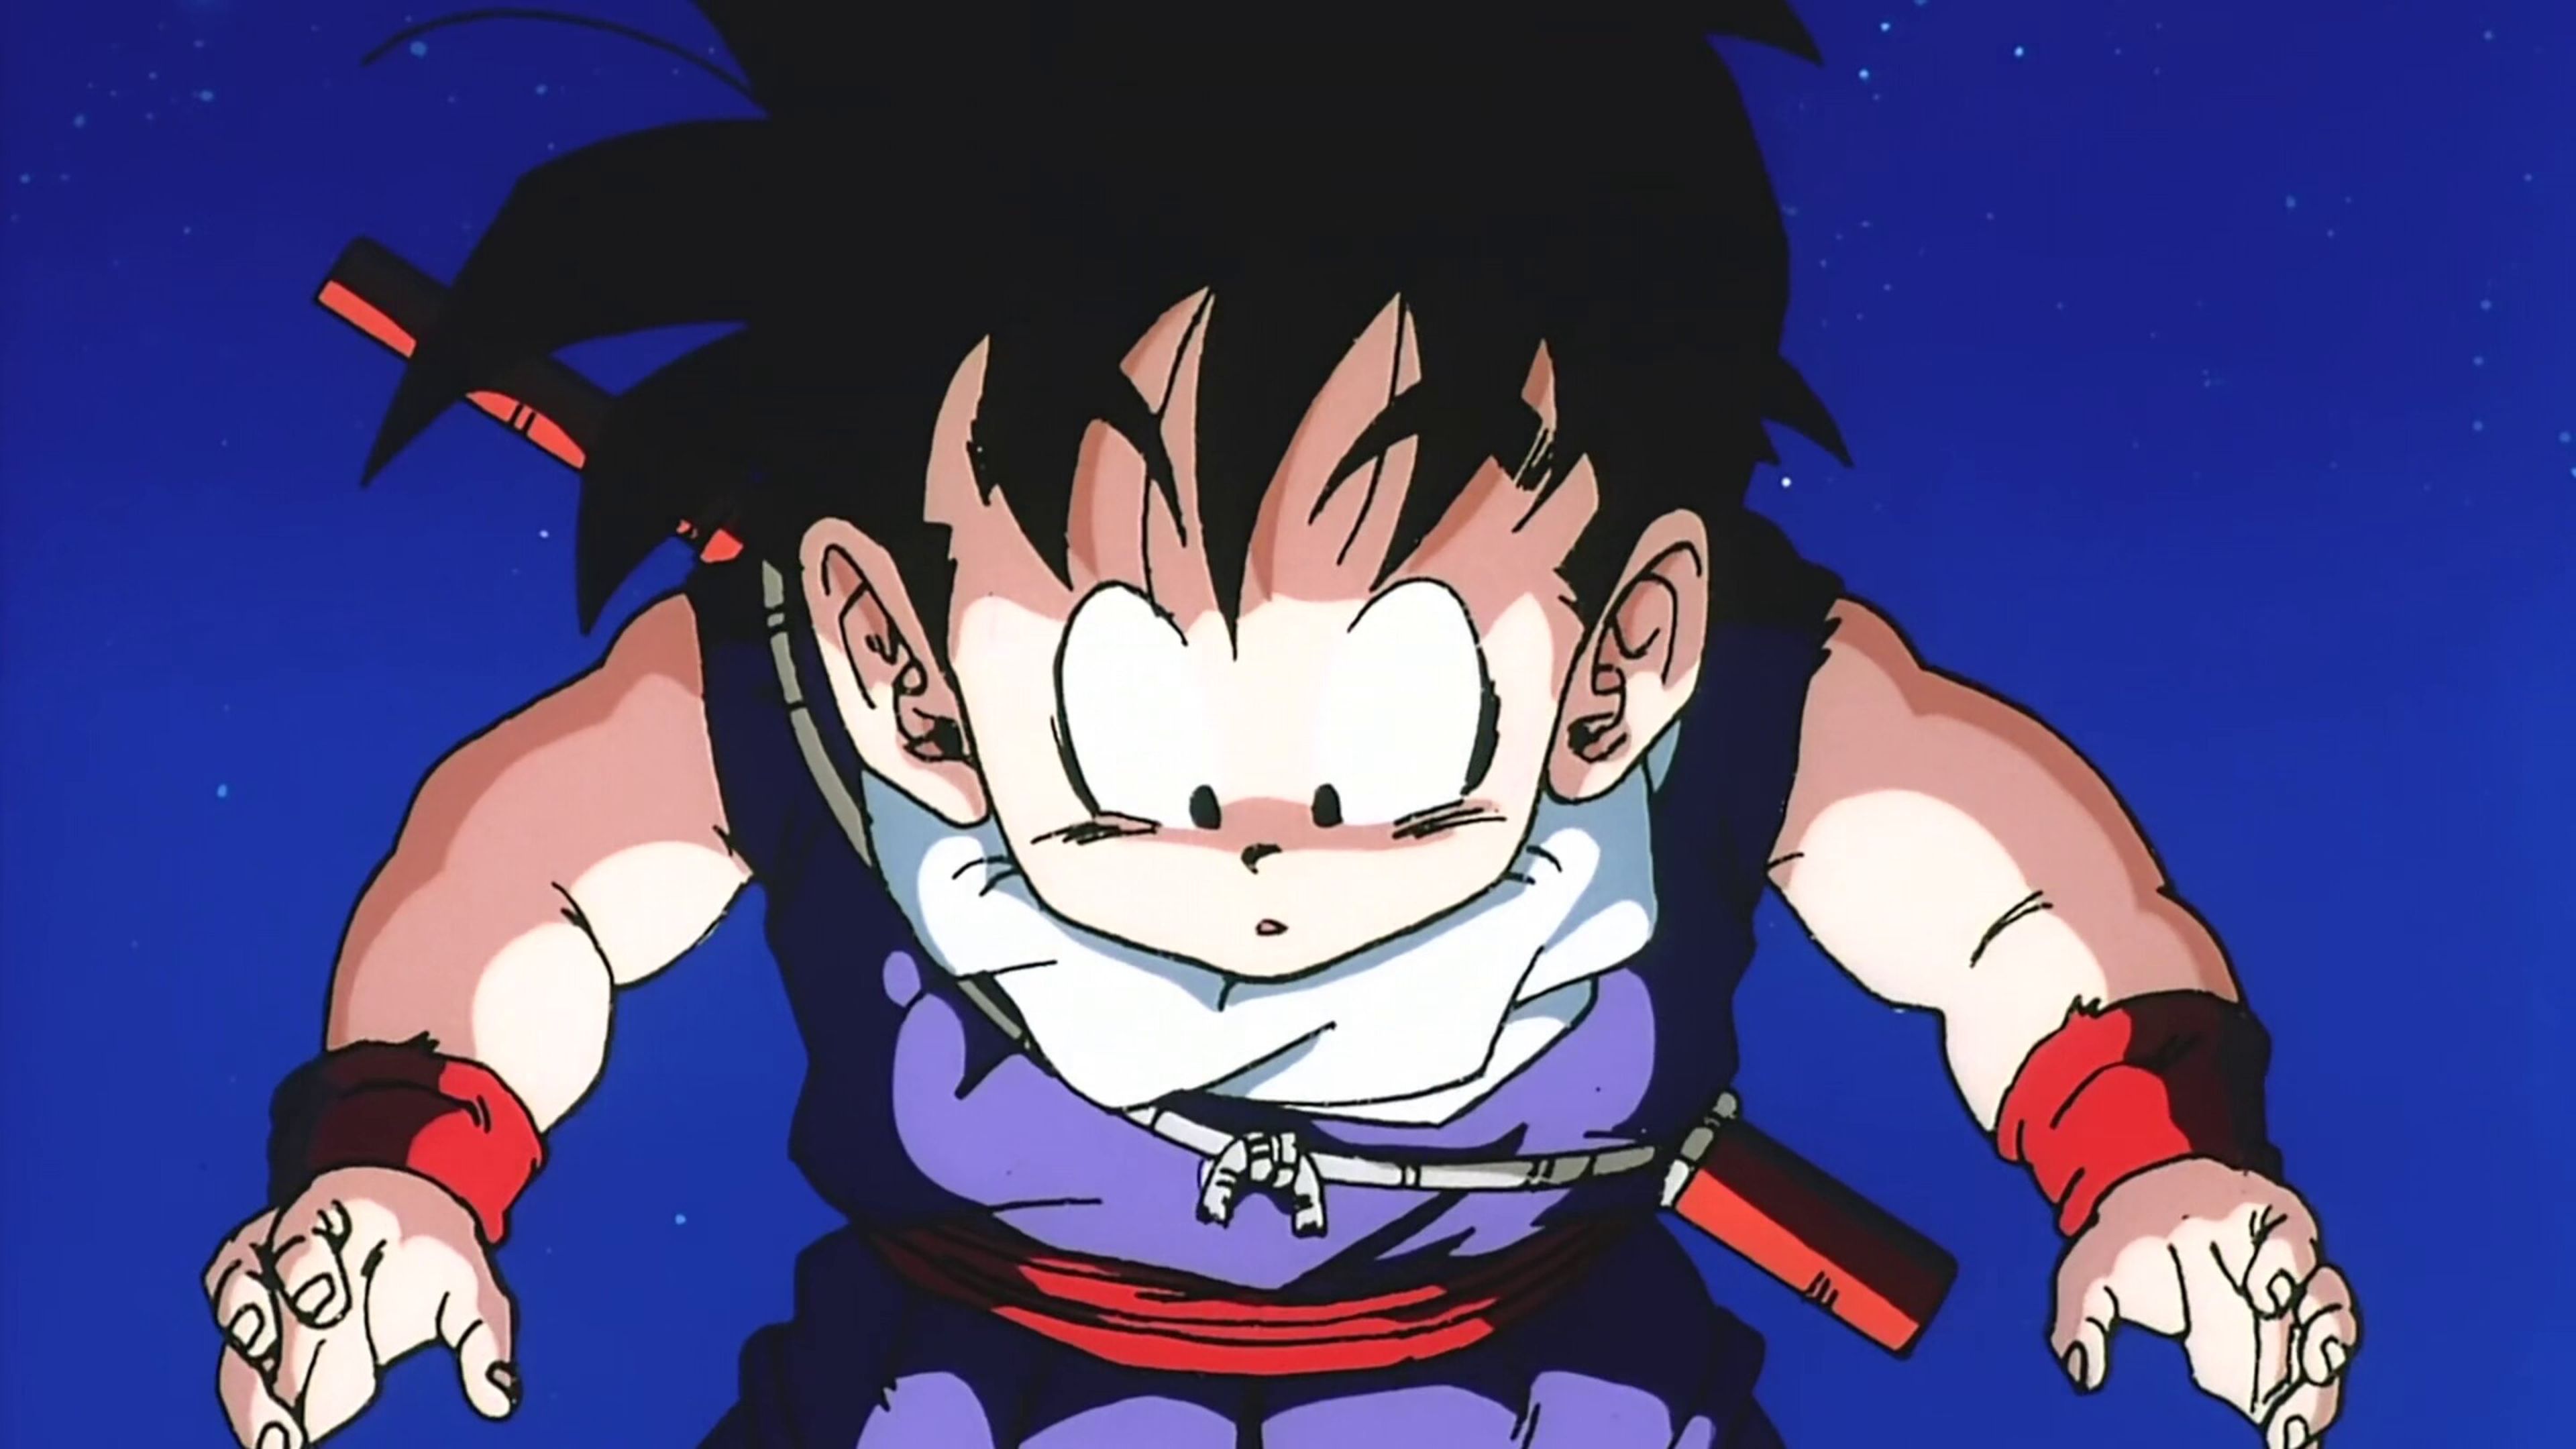 Motor ST e Animes - Da série: Dragon Ball Heroes Perso nagens ⚫Vegeta  Saiyajin de raça pura igual a Goku, Vegeta é um guerreiro de classe alta  que adora batalhas. Filho único